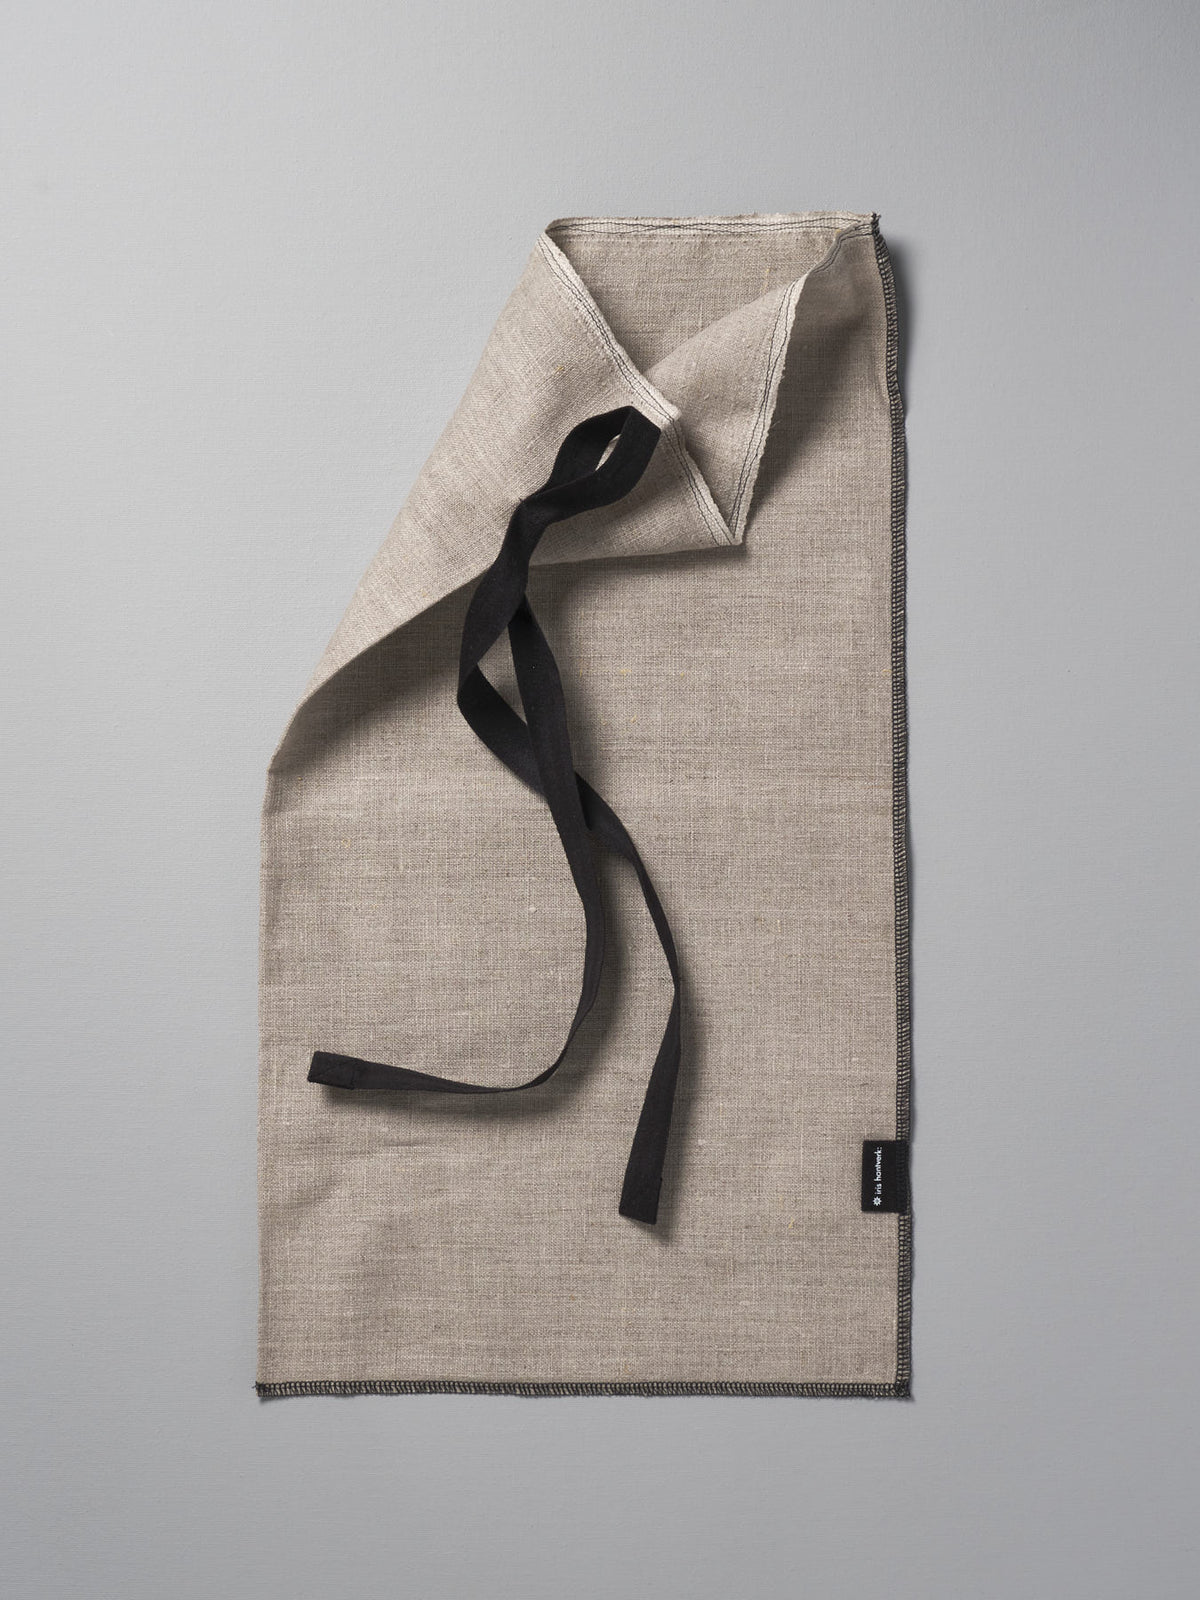 A Bread Bag - Linen towel with a black ribbon on it by Iris Hantverk.